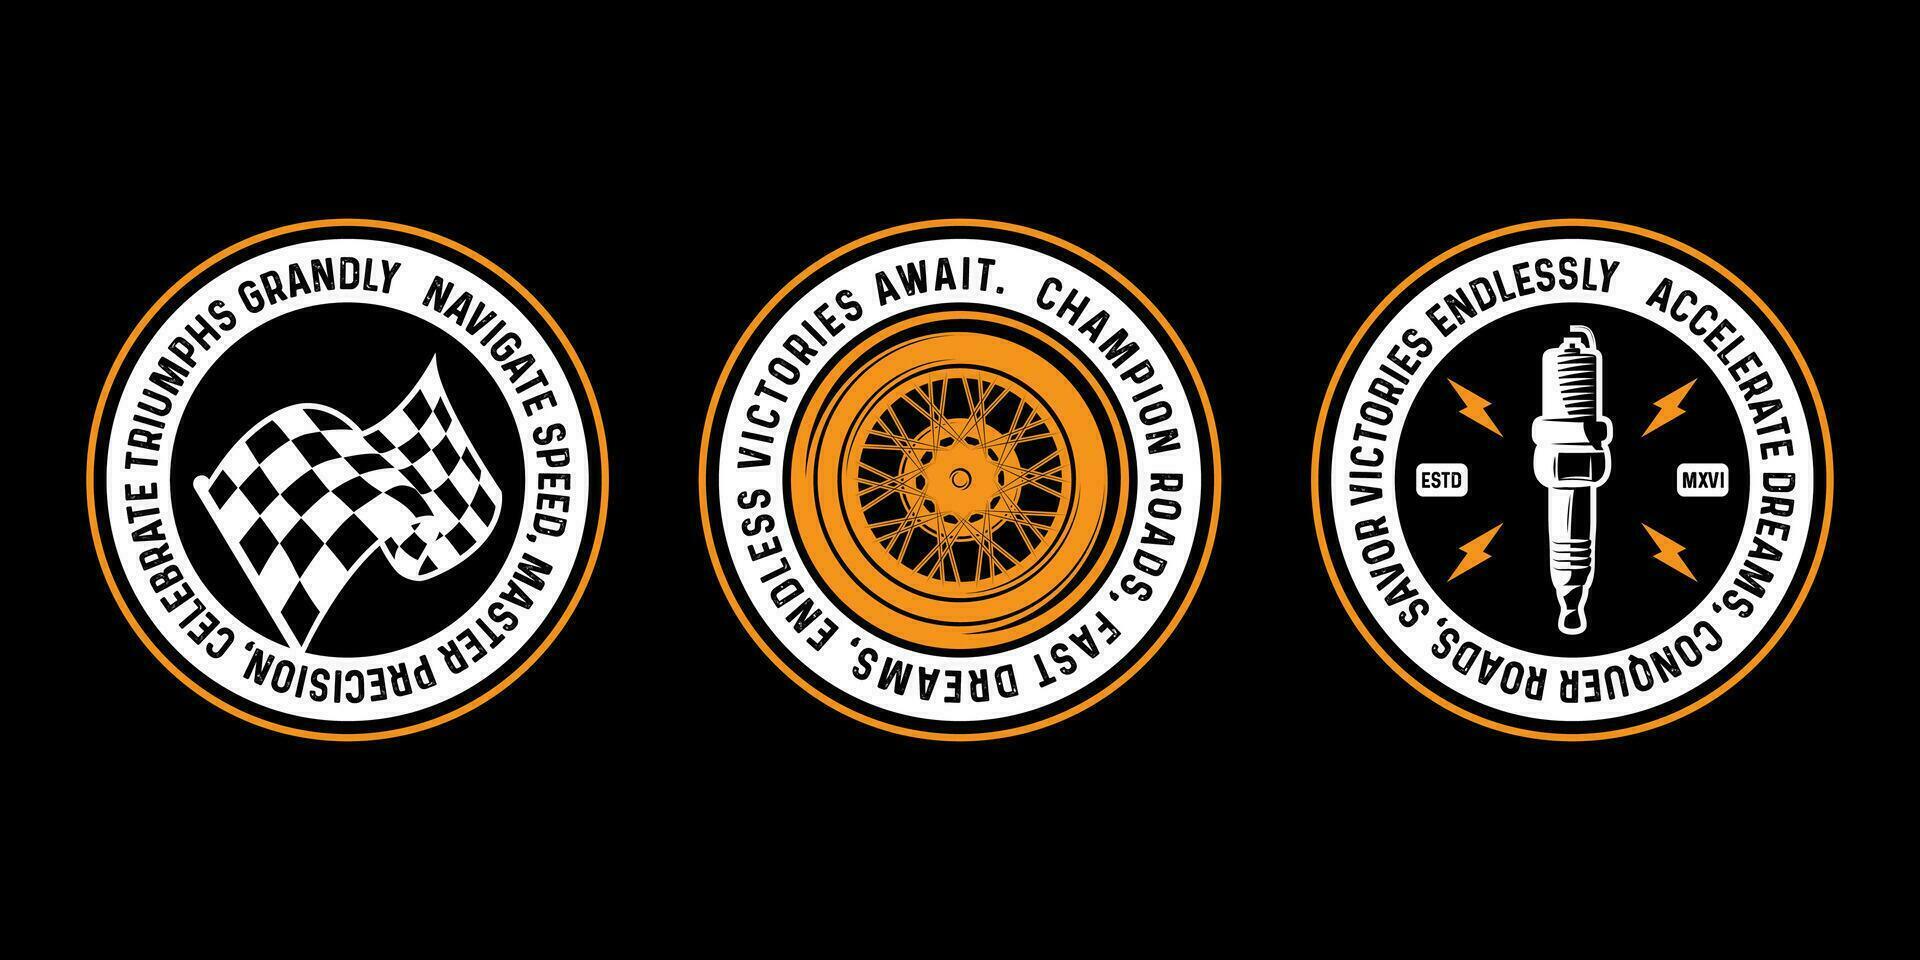 motorcykel tävlings märken klubb emblem tshirt design retro tävlings typografi grafik vektor